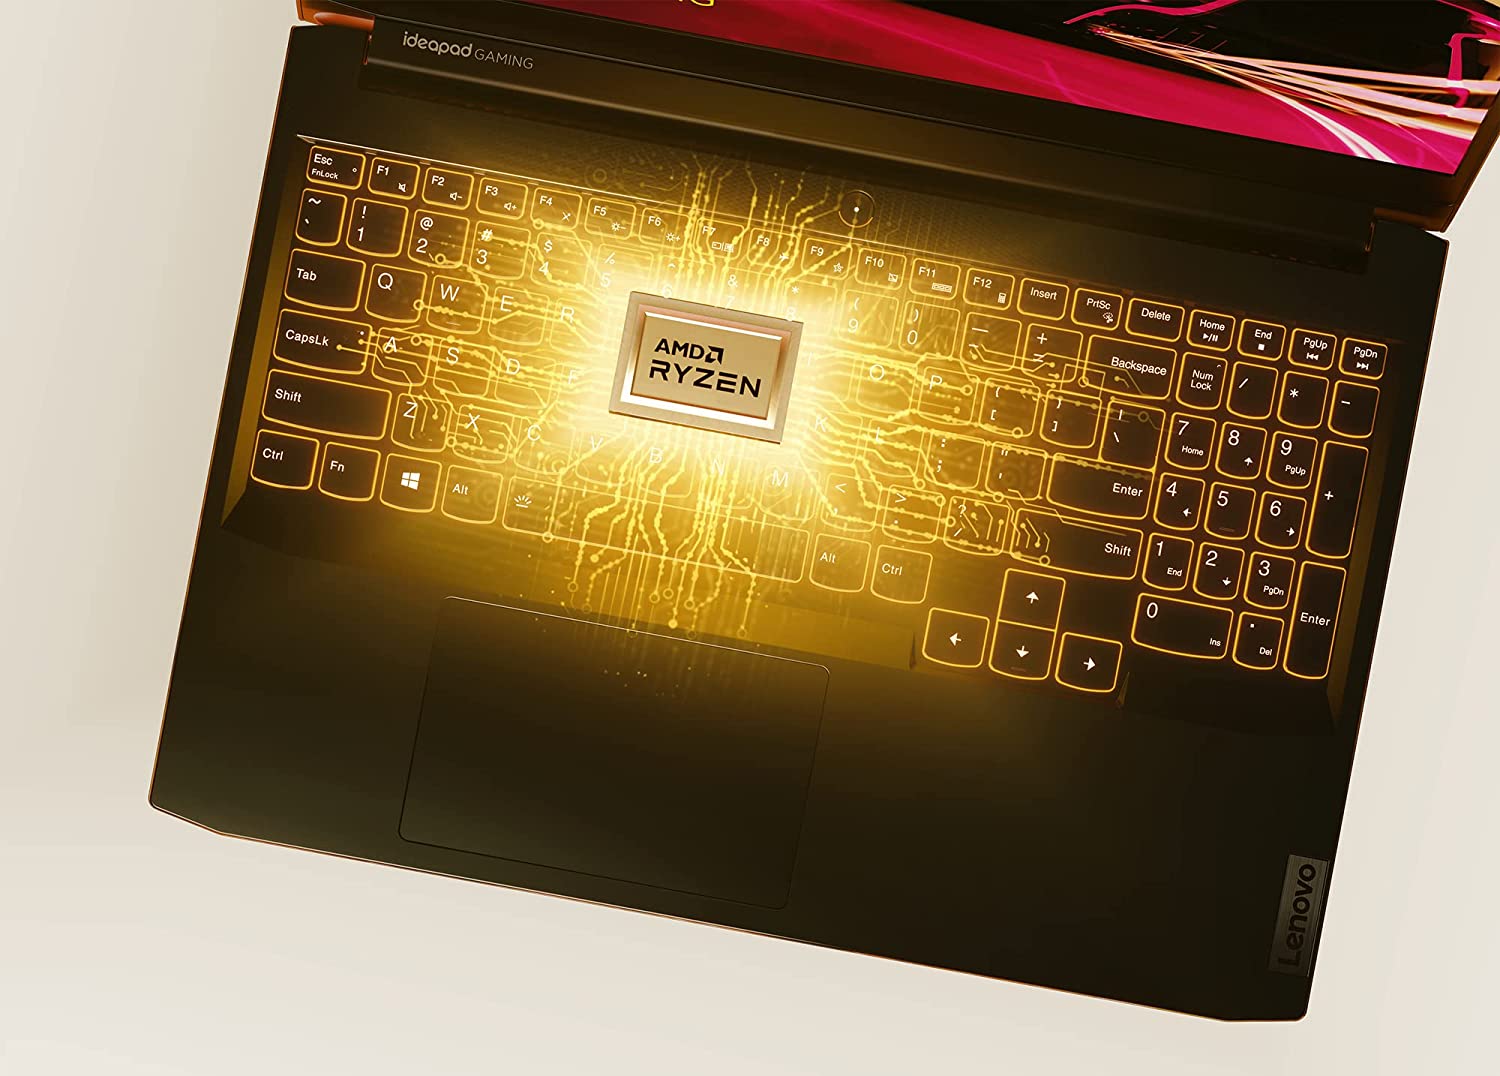  O plynulý chod notebooku Lenovo IdeaPad Gaming 3 sa stará 6-jadrový procesor AMD Ryzen 5 5600H, ktorý ponúka maximálny takt až 4,2 GHz v režime Precision Boost 2.